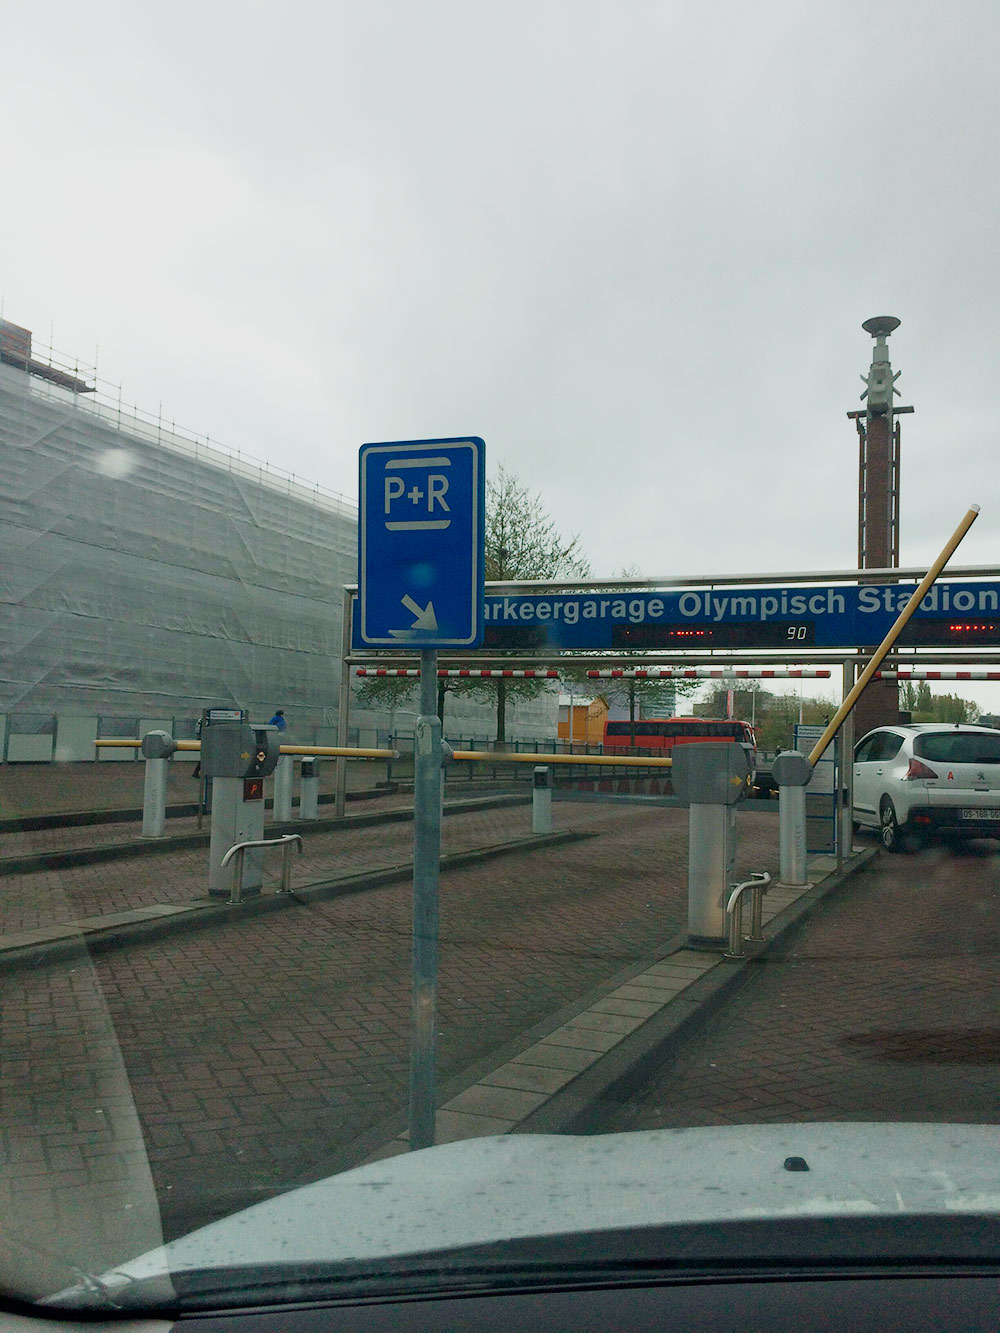 Парковка P+R в Амстердаме из предыдущей поездки весной 2017 года. Никому не рекомендую перемещаться по Нидерландам на своей машине: это жутко неудобно